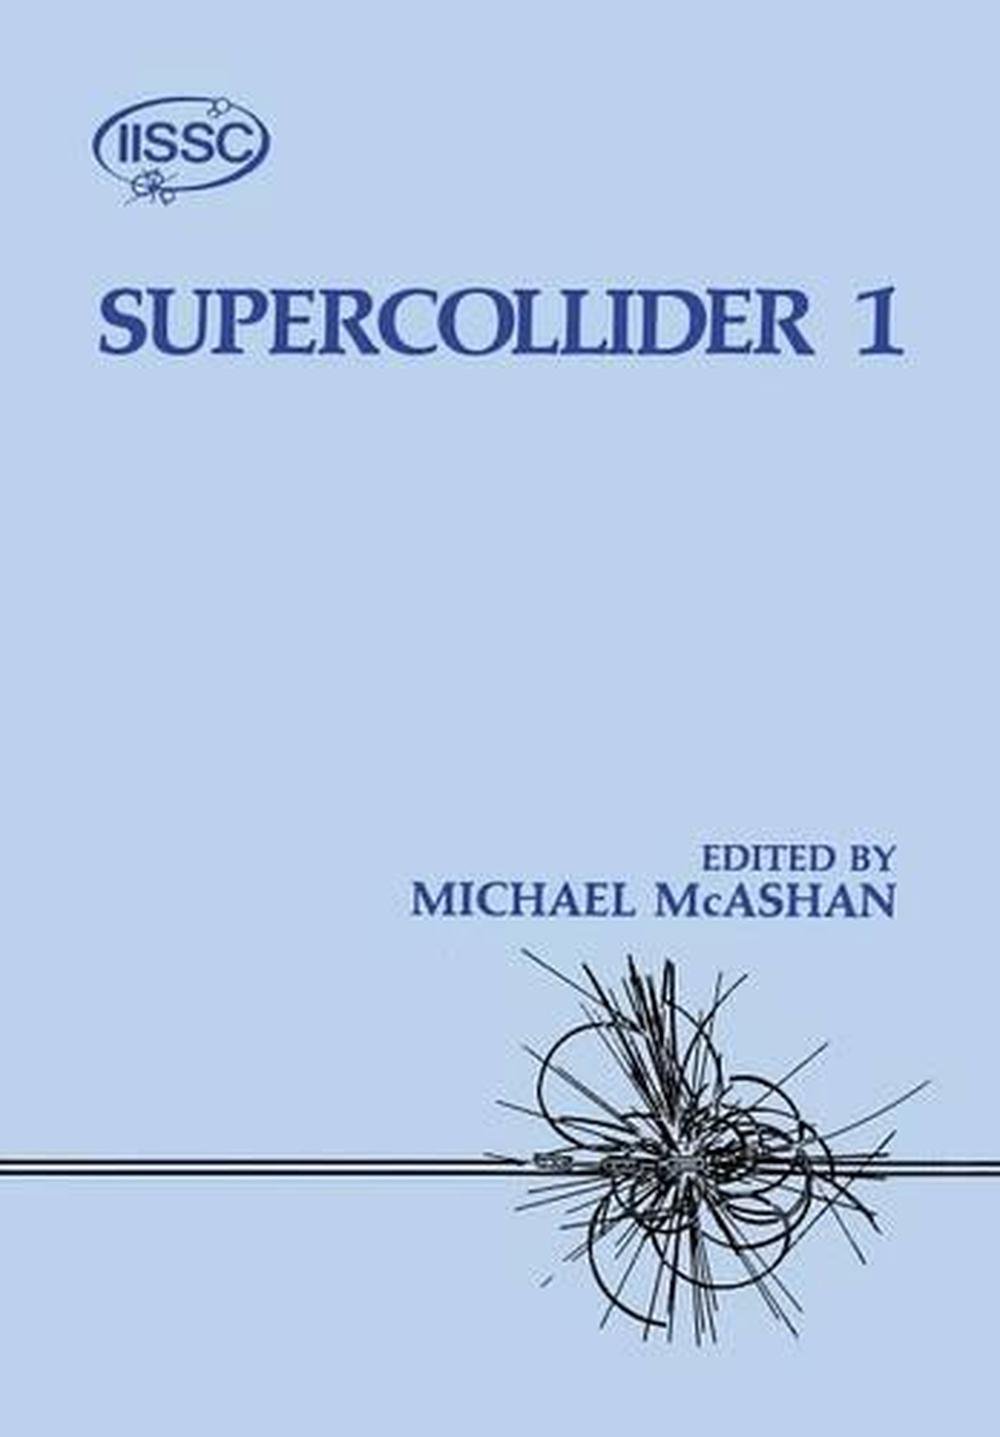 the supercollider book pdf